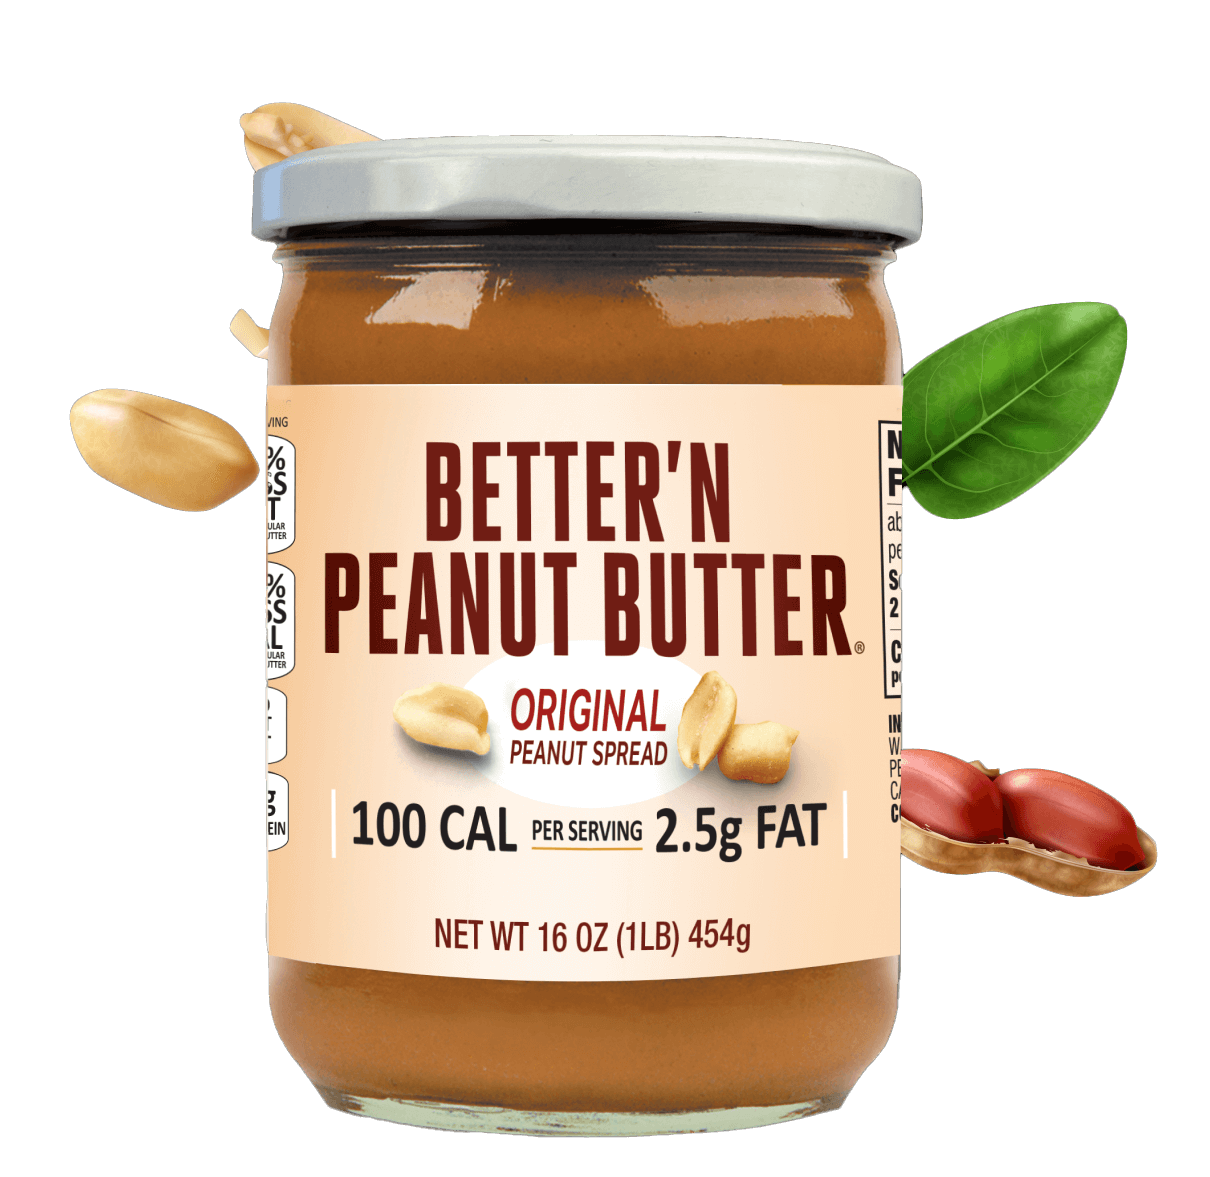 Better'n Peanut Butter Original